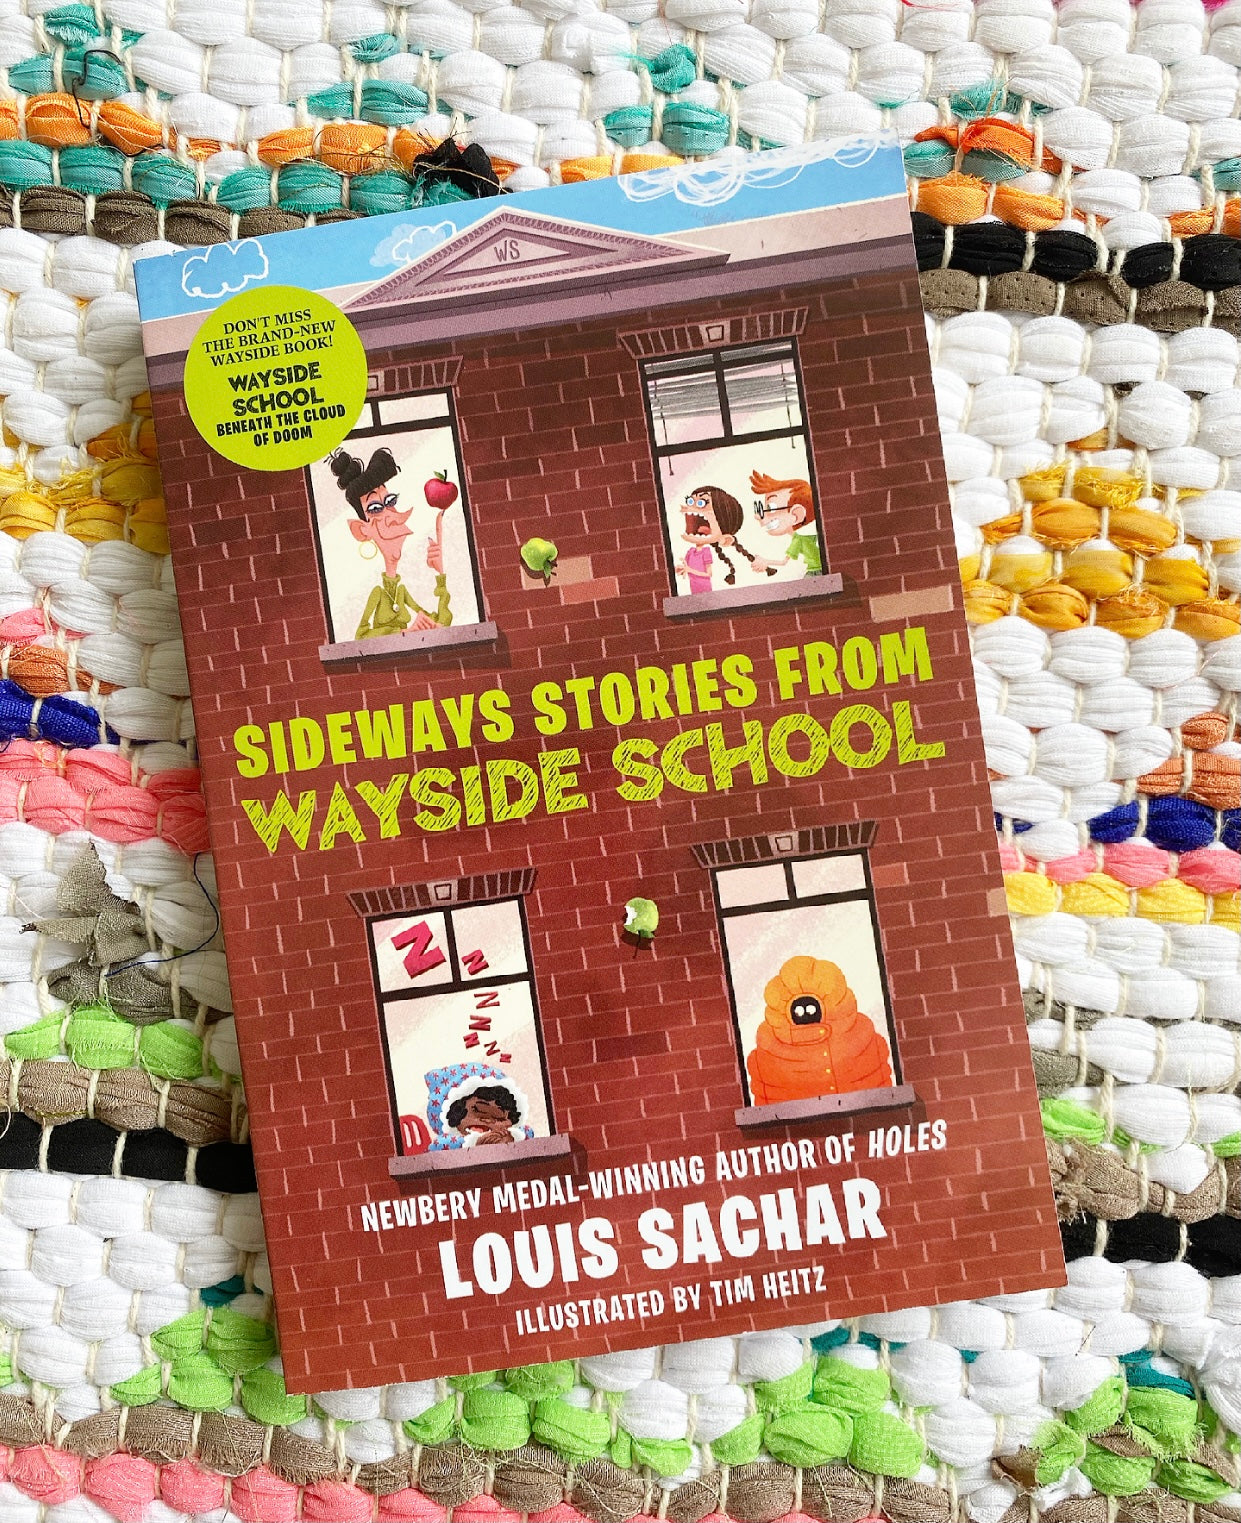 Wayside School Gets A Little Stranger Holes Louis Sachar Original English  Children's Story Book - AliExpress